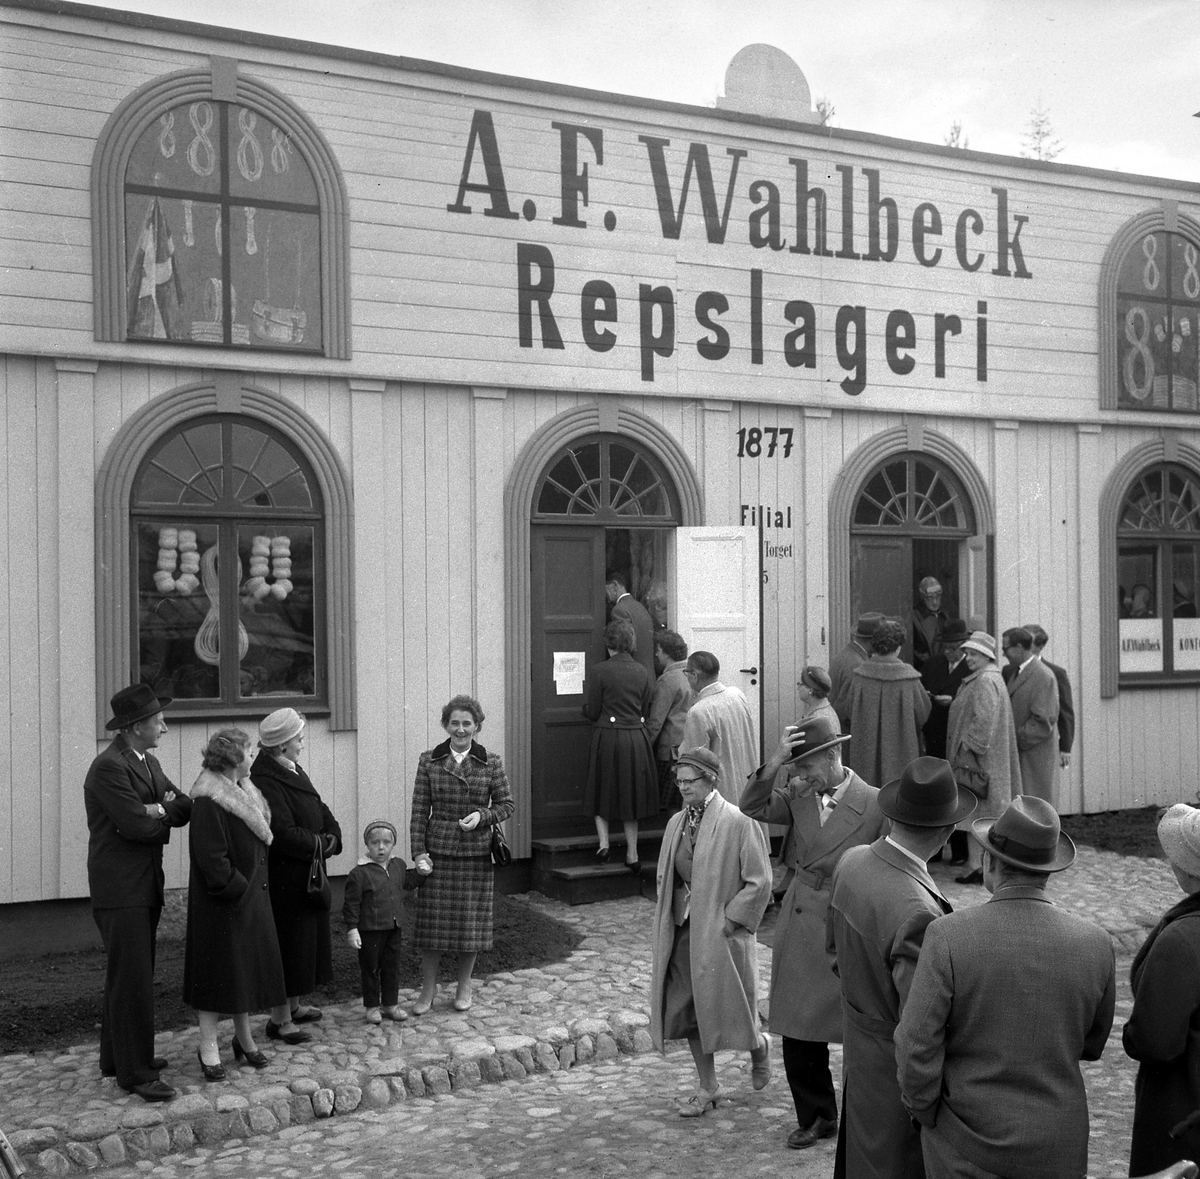 Bildserie från invigningen av Wahlbecks repslagerimuseum i Gamla Linköping 1959. Kontorsbyggnaden uppfördes på 1860-talet av byggmästaren Jonas Jonson som hamnkontor och var placerad vid Linköpings hamn. Byggnaden inköptes 1877 av repslagaremästaren Adolf Fredrik Wahlbeck, som lät flytta den till firmans repslageri vid Kanberget där den nyttjades som kontor, butik och magasin. När Wahlbeck 1913 flyttade sin verksamhet till området söder om kyrkogården flyttades även denna byggnad för att 1944 inredas till museum. År 1957 flyttades såväl byggnaden som museet till Gamla Linköping. På bilderna ses bland andra bröderna Gotthard och Ebbe Wahlbeck och den förstnämndes son Olle Wahlbeck.